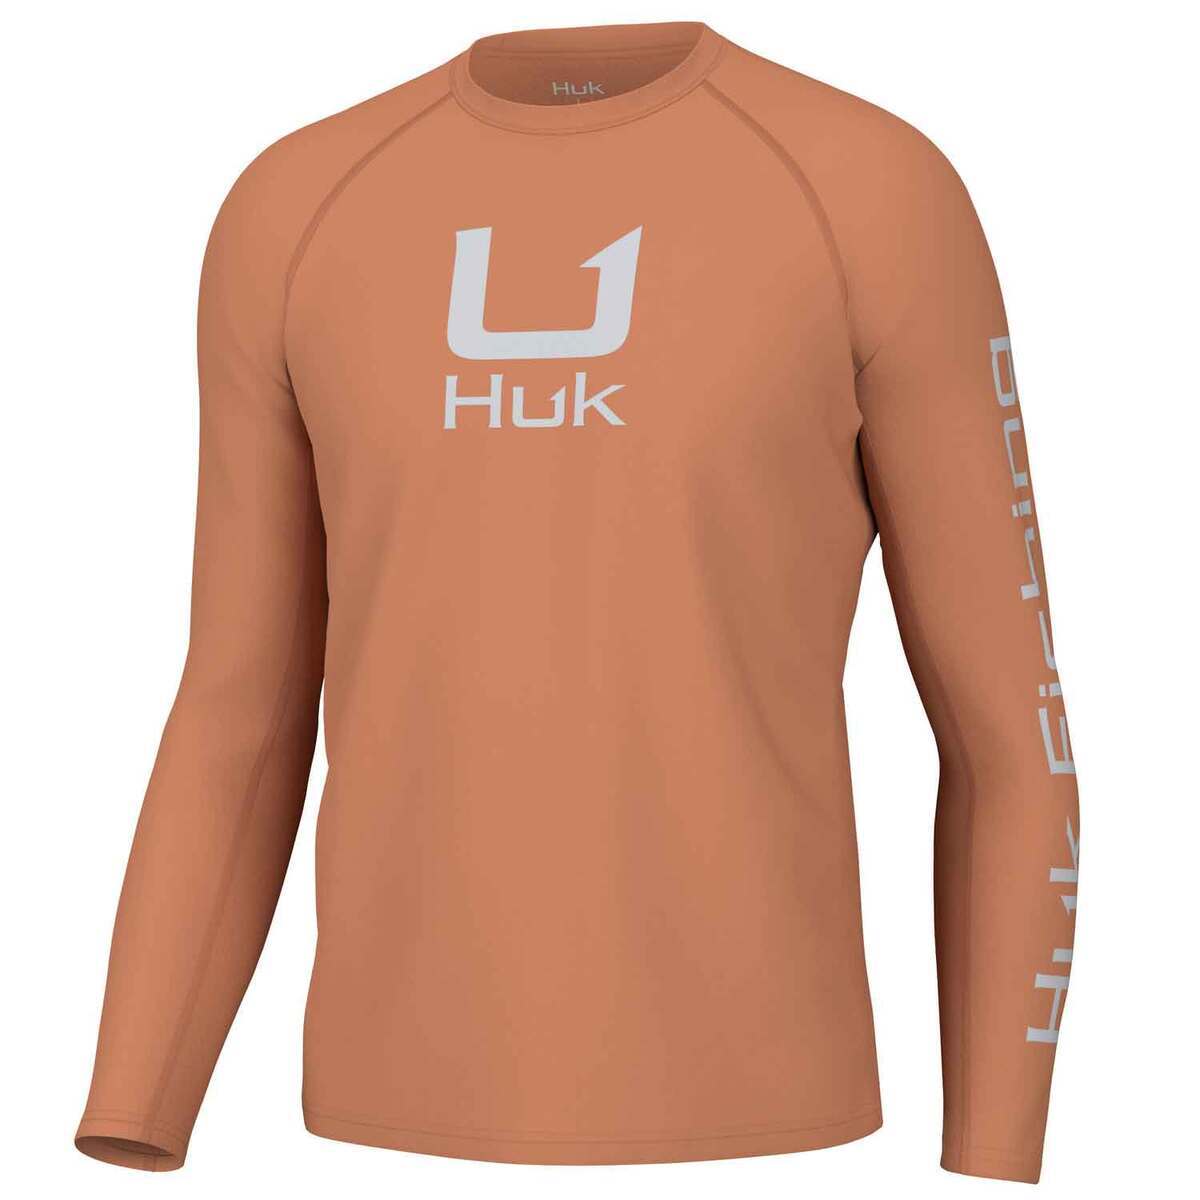 Huk Men's Icon Crew Long Sleeve Fishing Shirt - Sunburn - M - Sunburn M